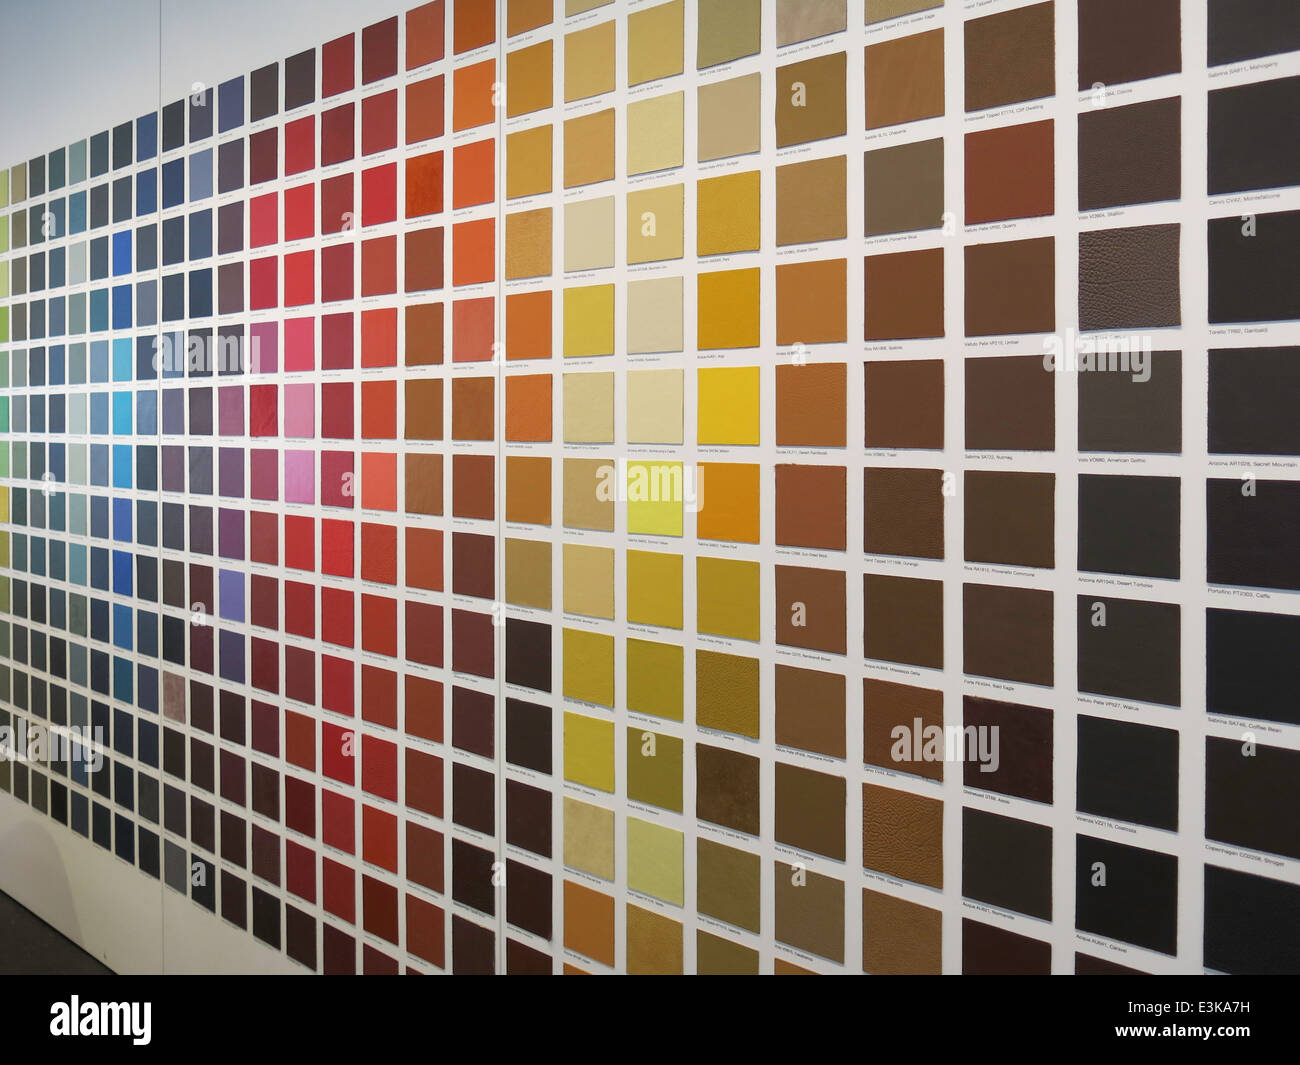 Color Sample Wall Display,USA Stock Photo